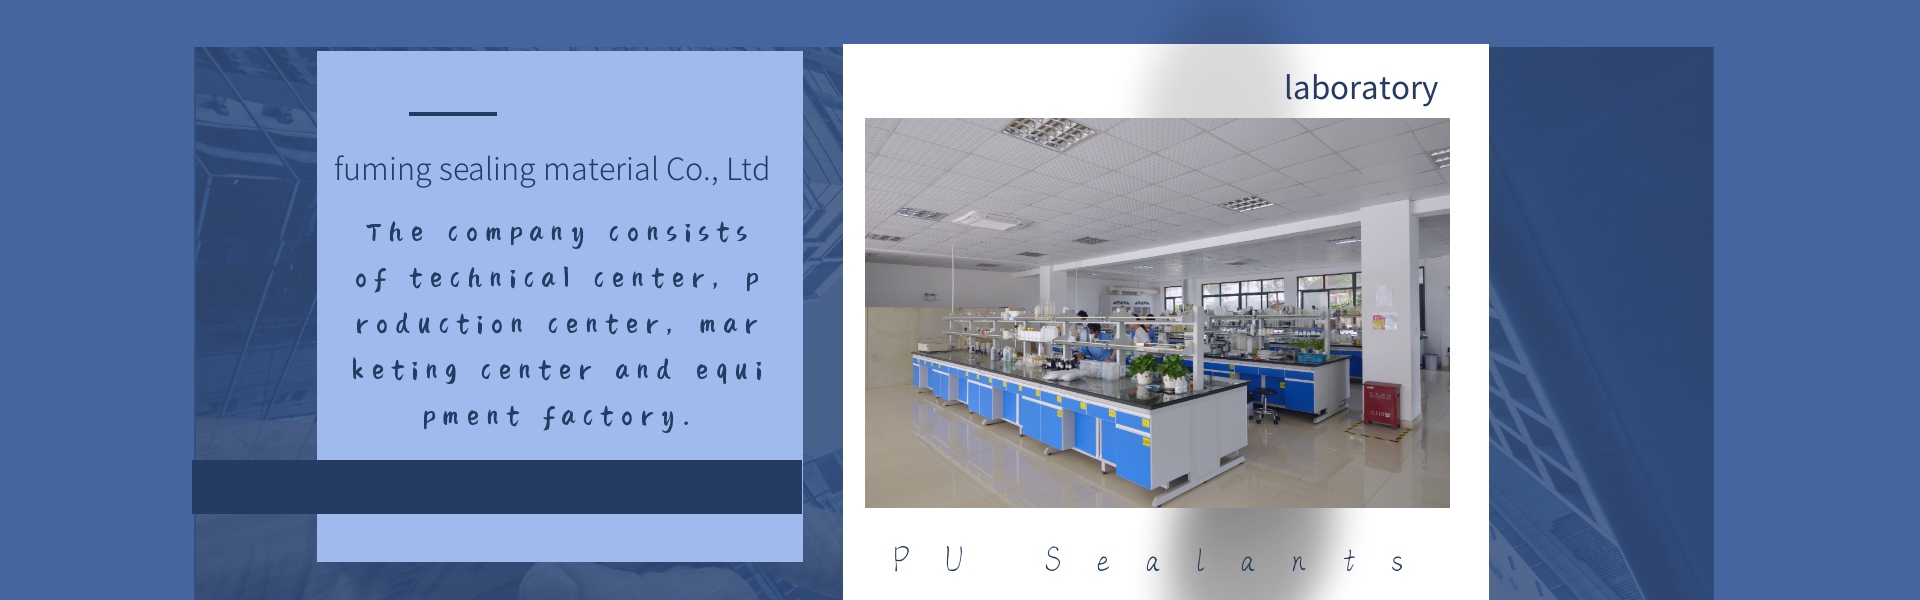 adesivo de envasamento eletrônico, selantes pu, selante de filtro,Dongguan fuming sealing material Co., Ltd